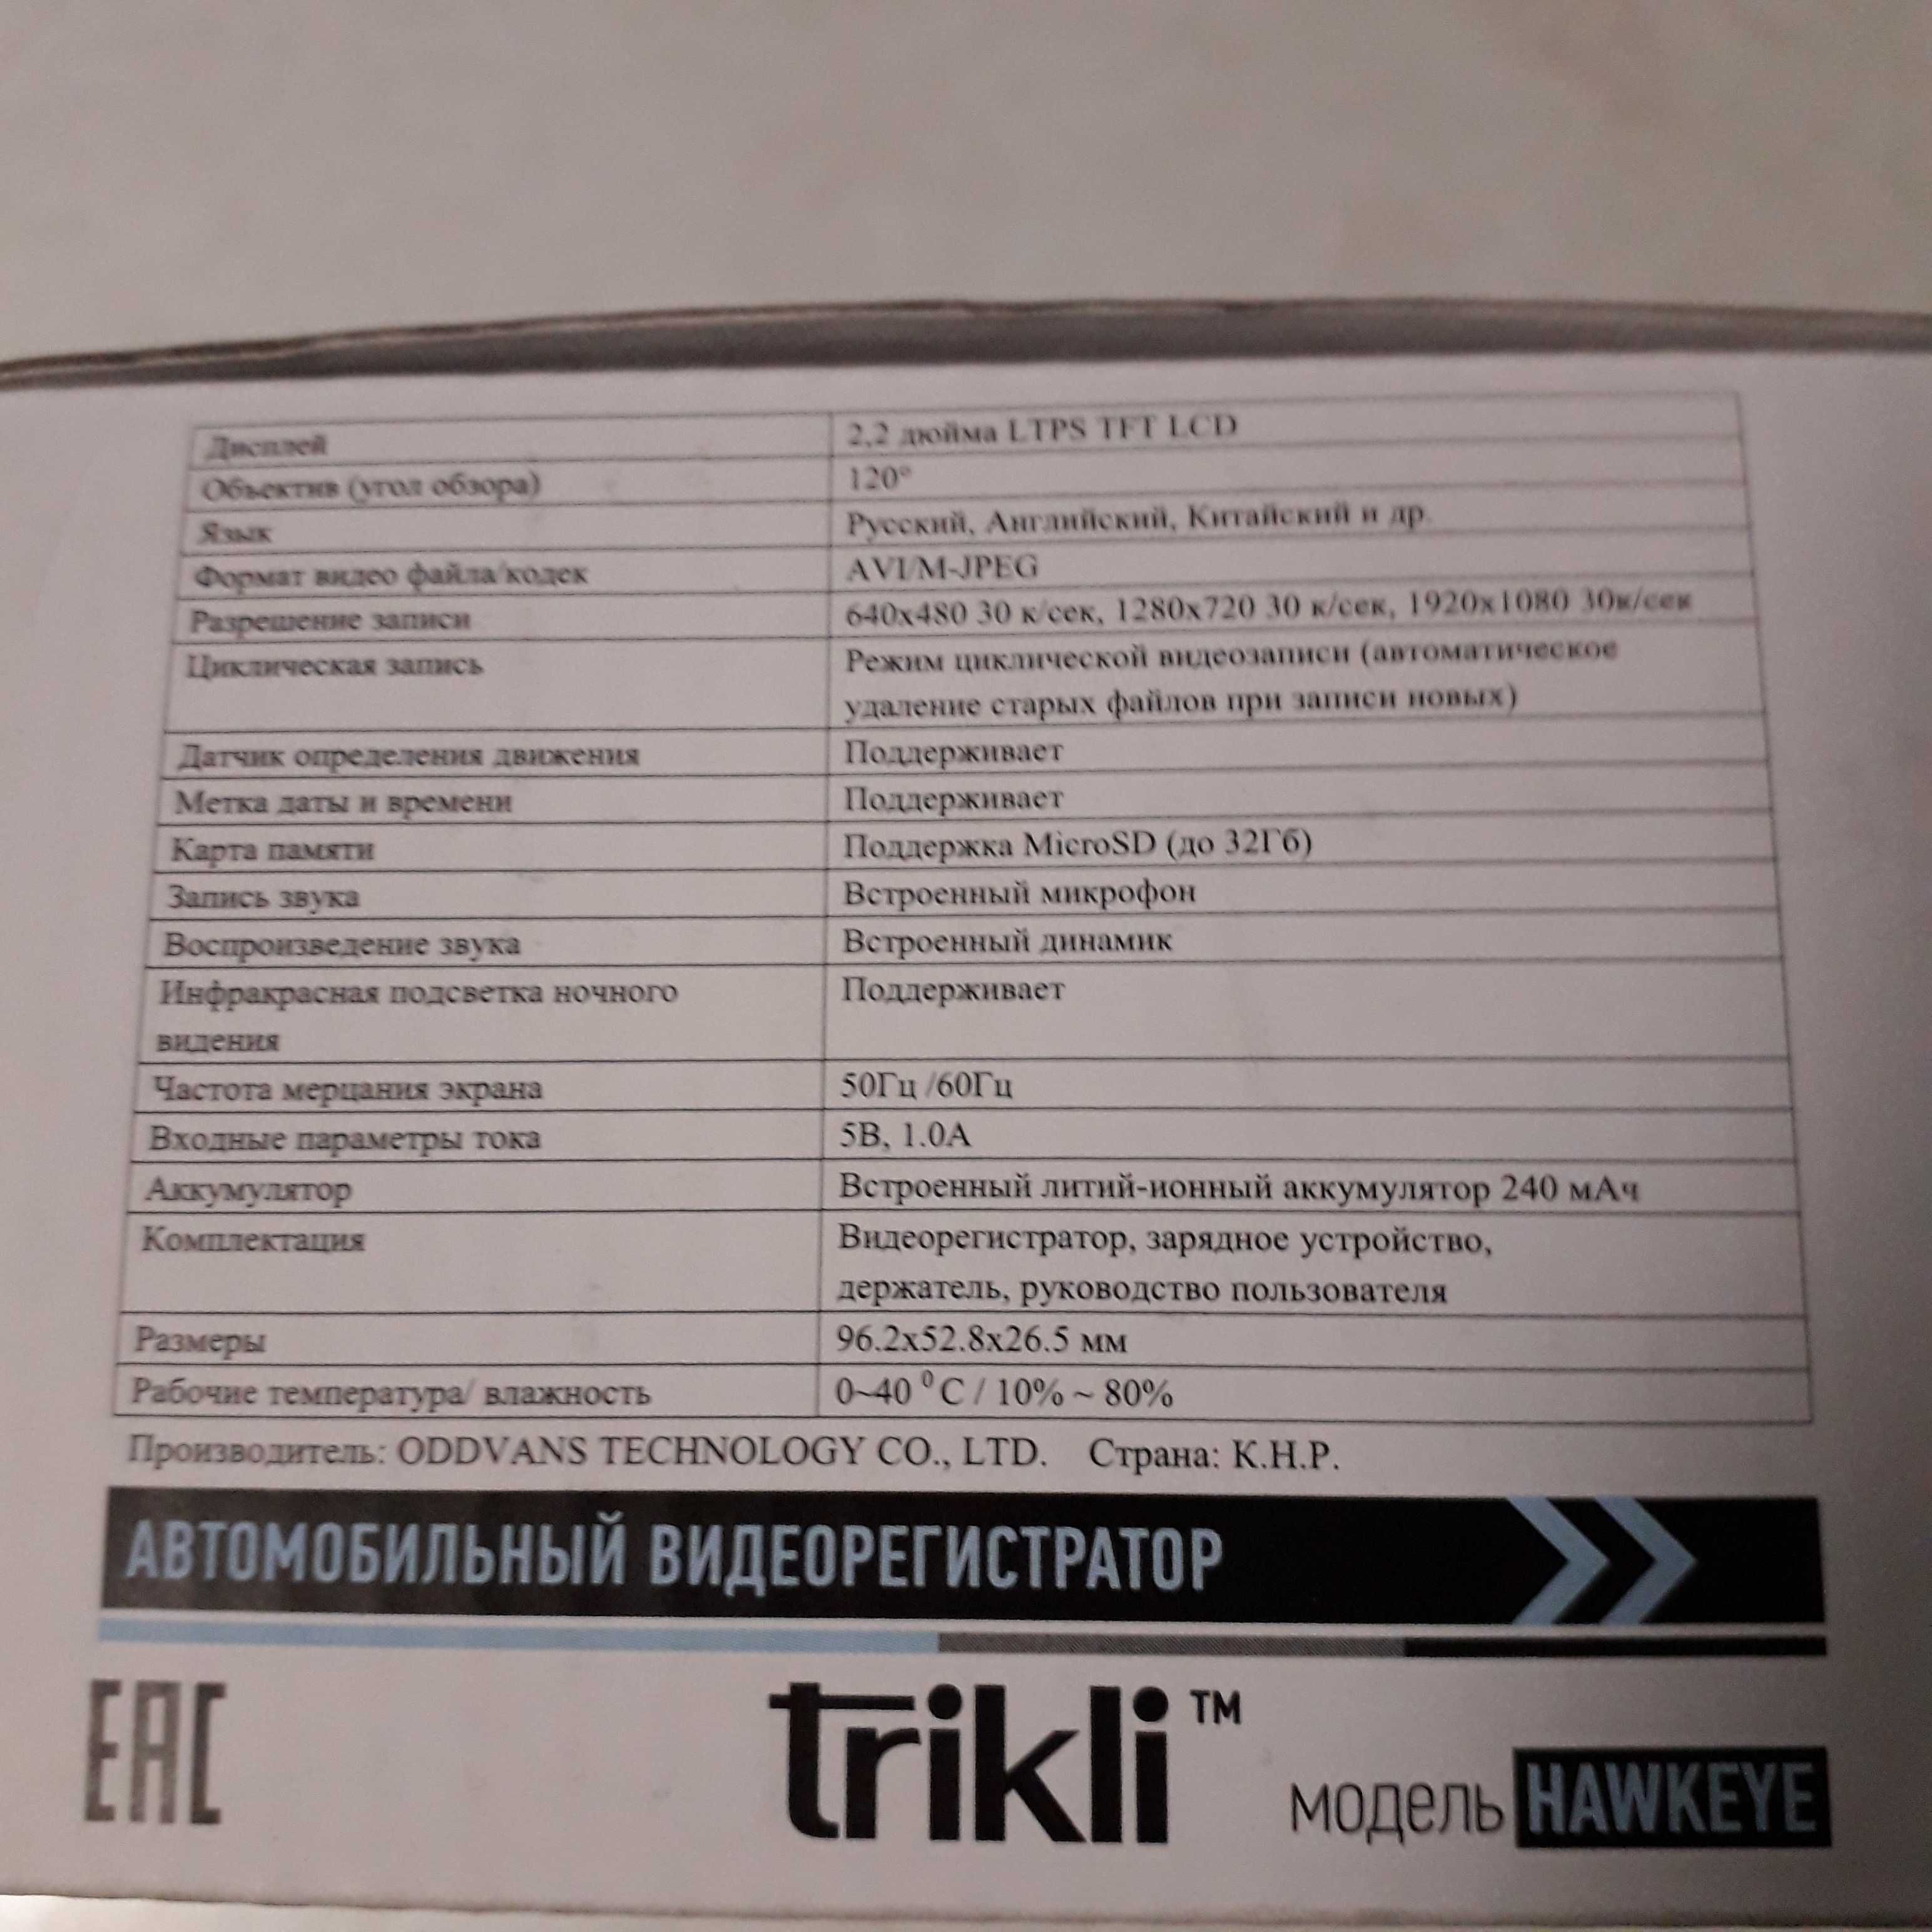 Видео Регистратор Автомобильн TRIKLI Новый в Упак. 2500тг